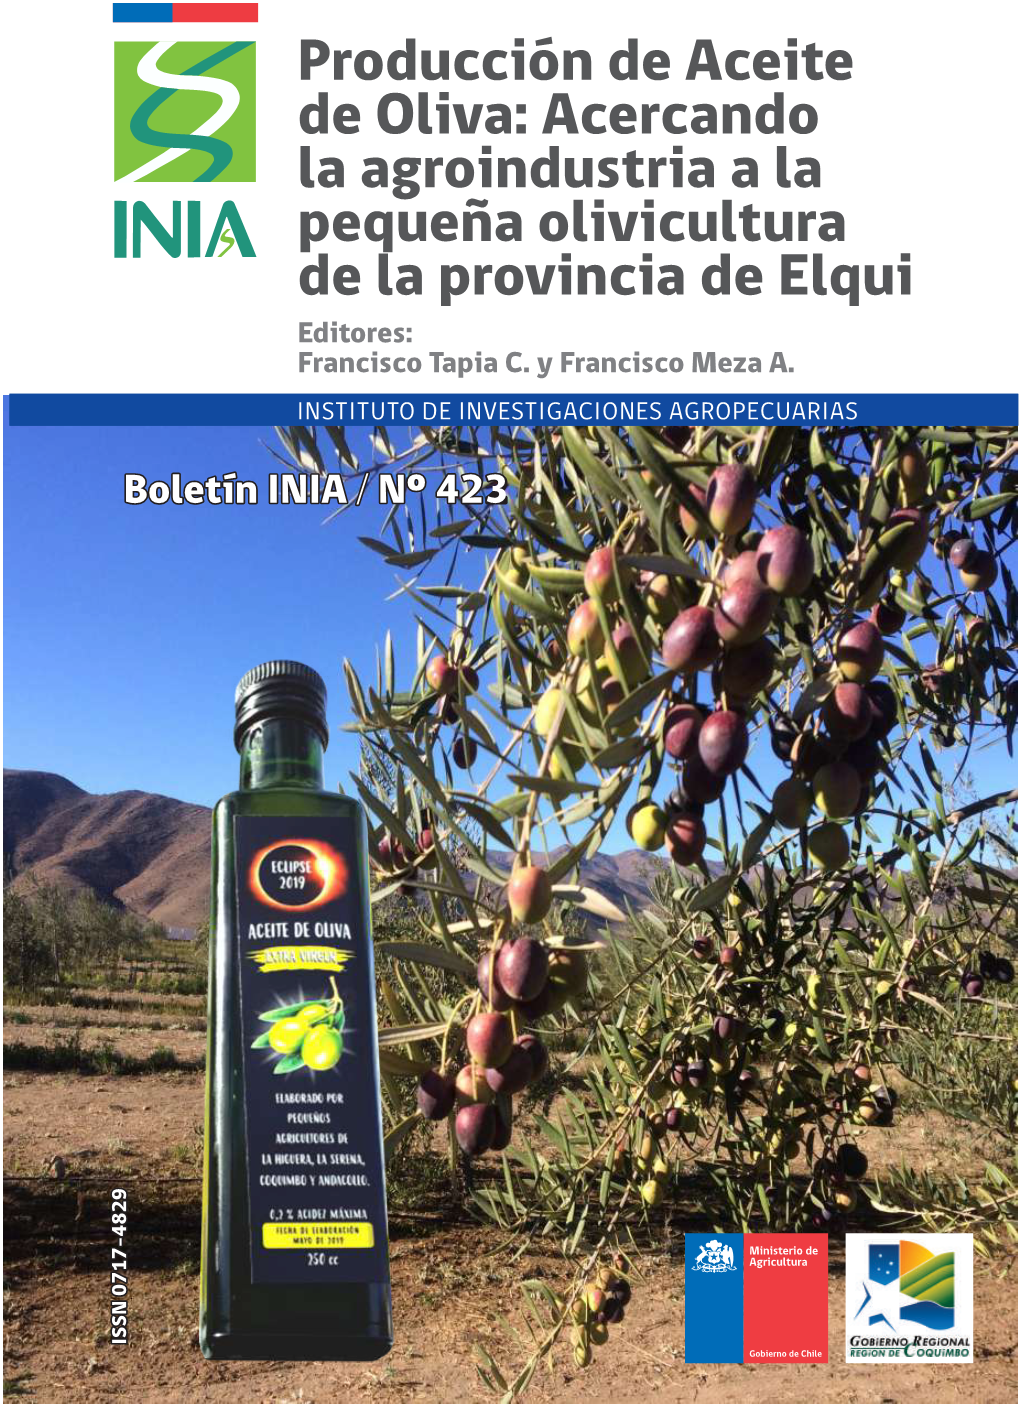 Producción De Aceite De Oliva: Acercando La Agroindustria a La Pequeña Olivicultura De La Provincia De Elqui